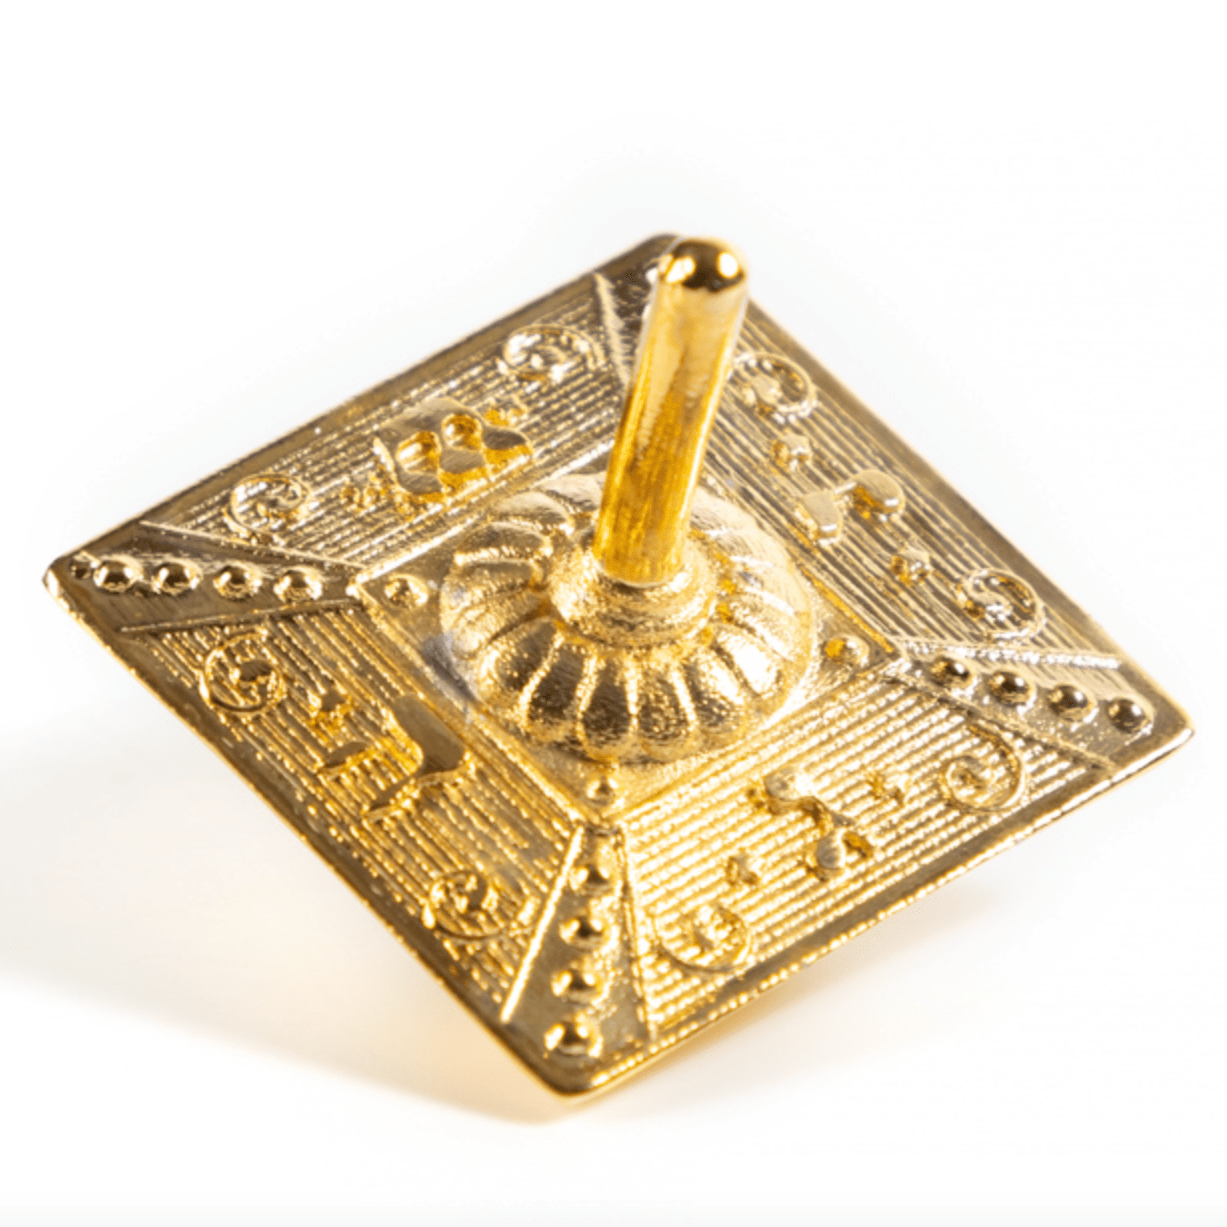 Israel Museum Dreidels Spinning Top Gilded Brass Dreidel by Israel Museum